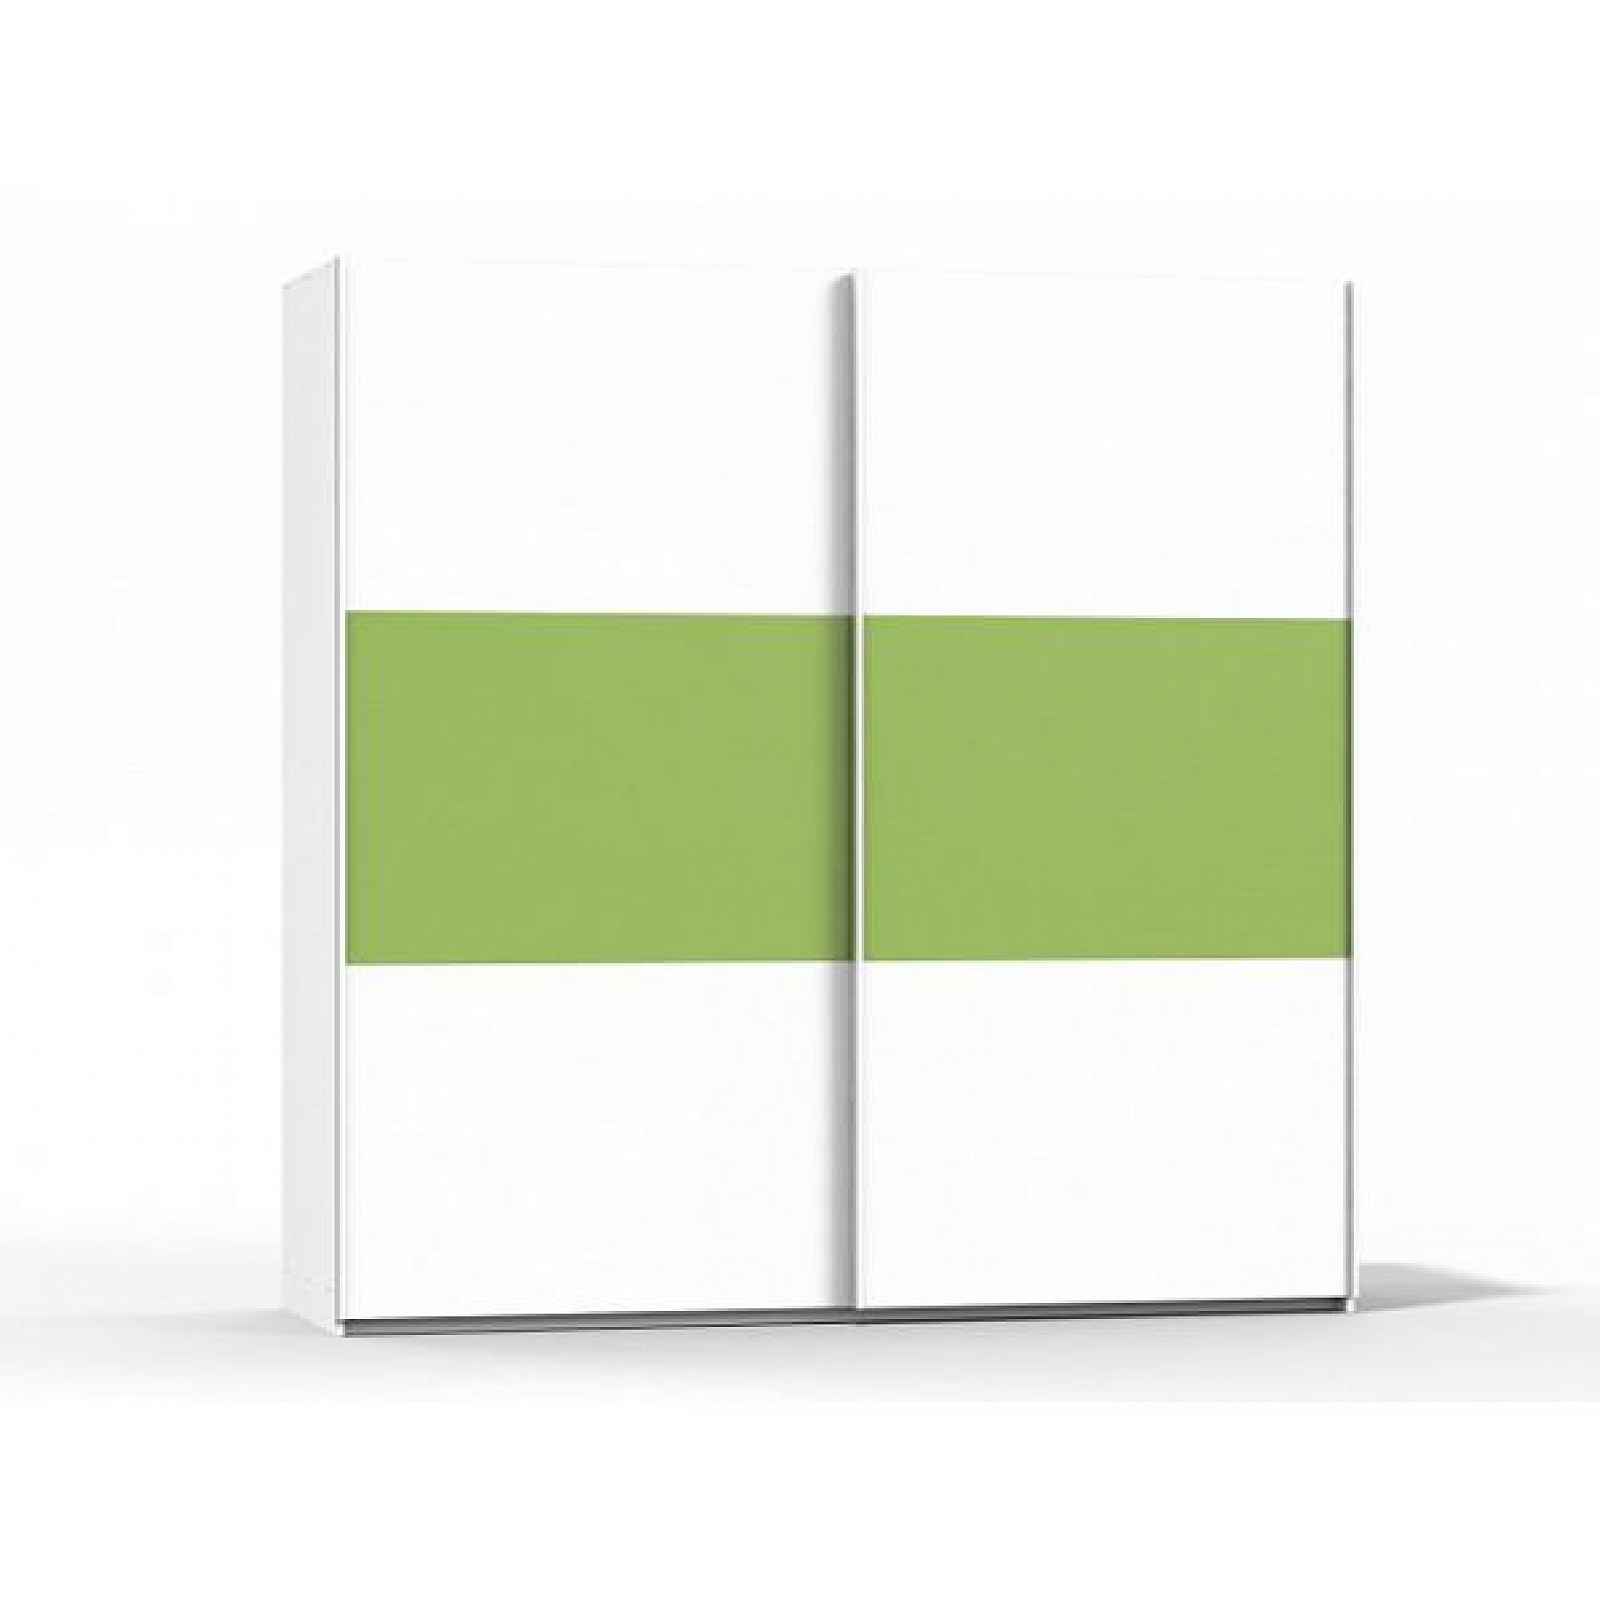 Šatní skříň Rea Houston 2 bílá-zelená